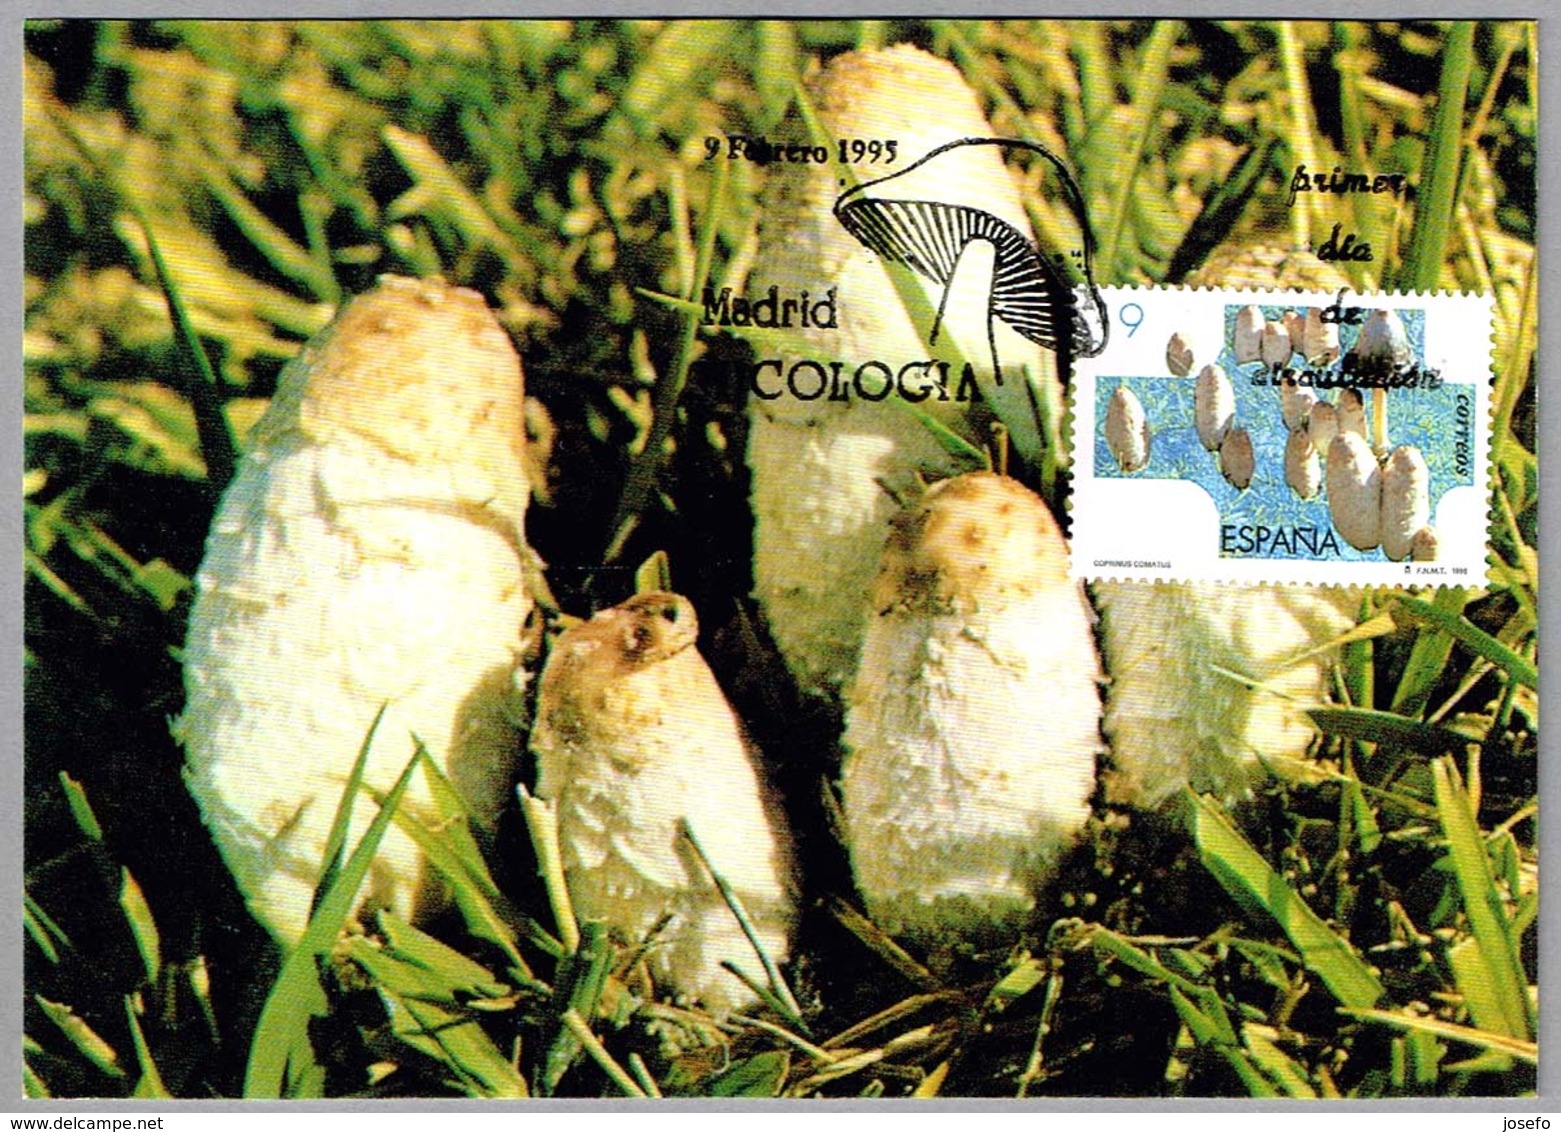 Seta COPRINUS COMATUS - Mushroom. Madrid 1995 - Paddestoelen